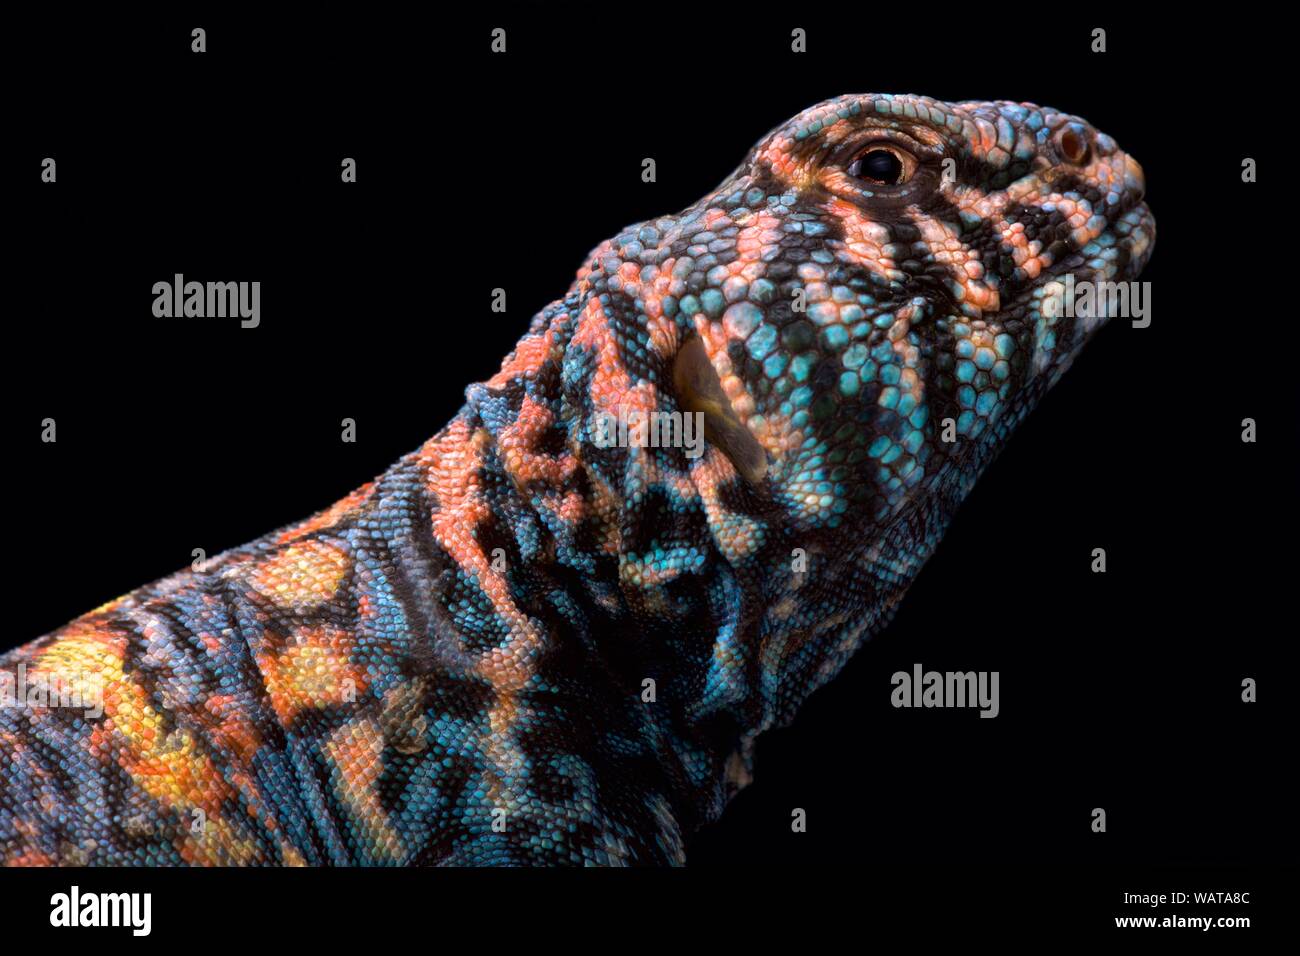 Reich verzierte Stacheligen-tailed Lizard (Uromastyx ornata Ornata) Stockfoto